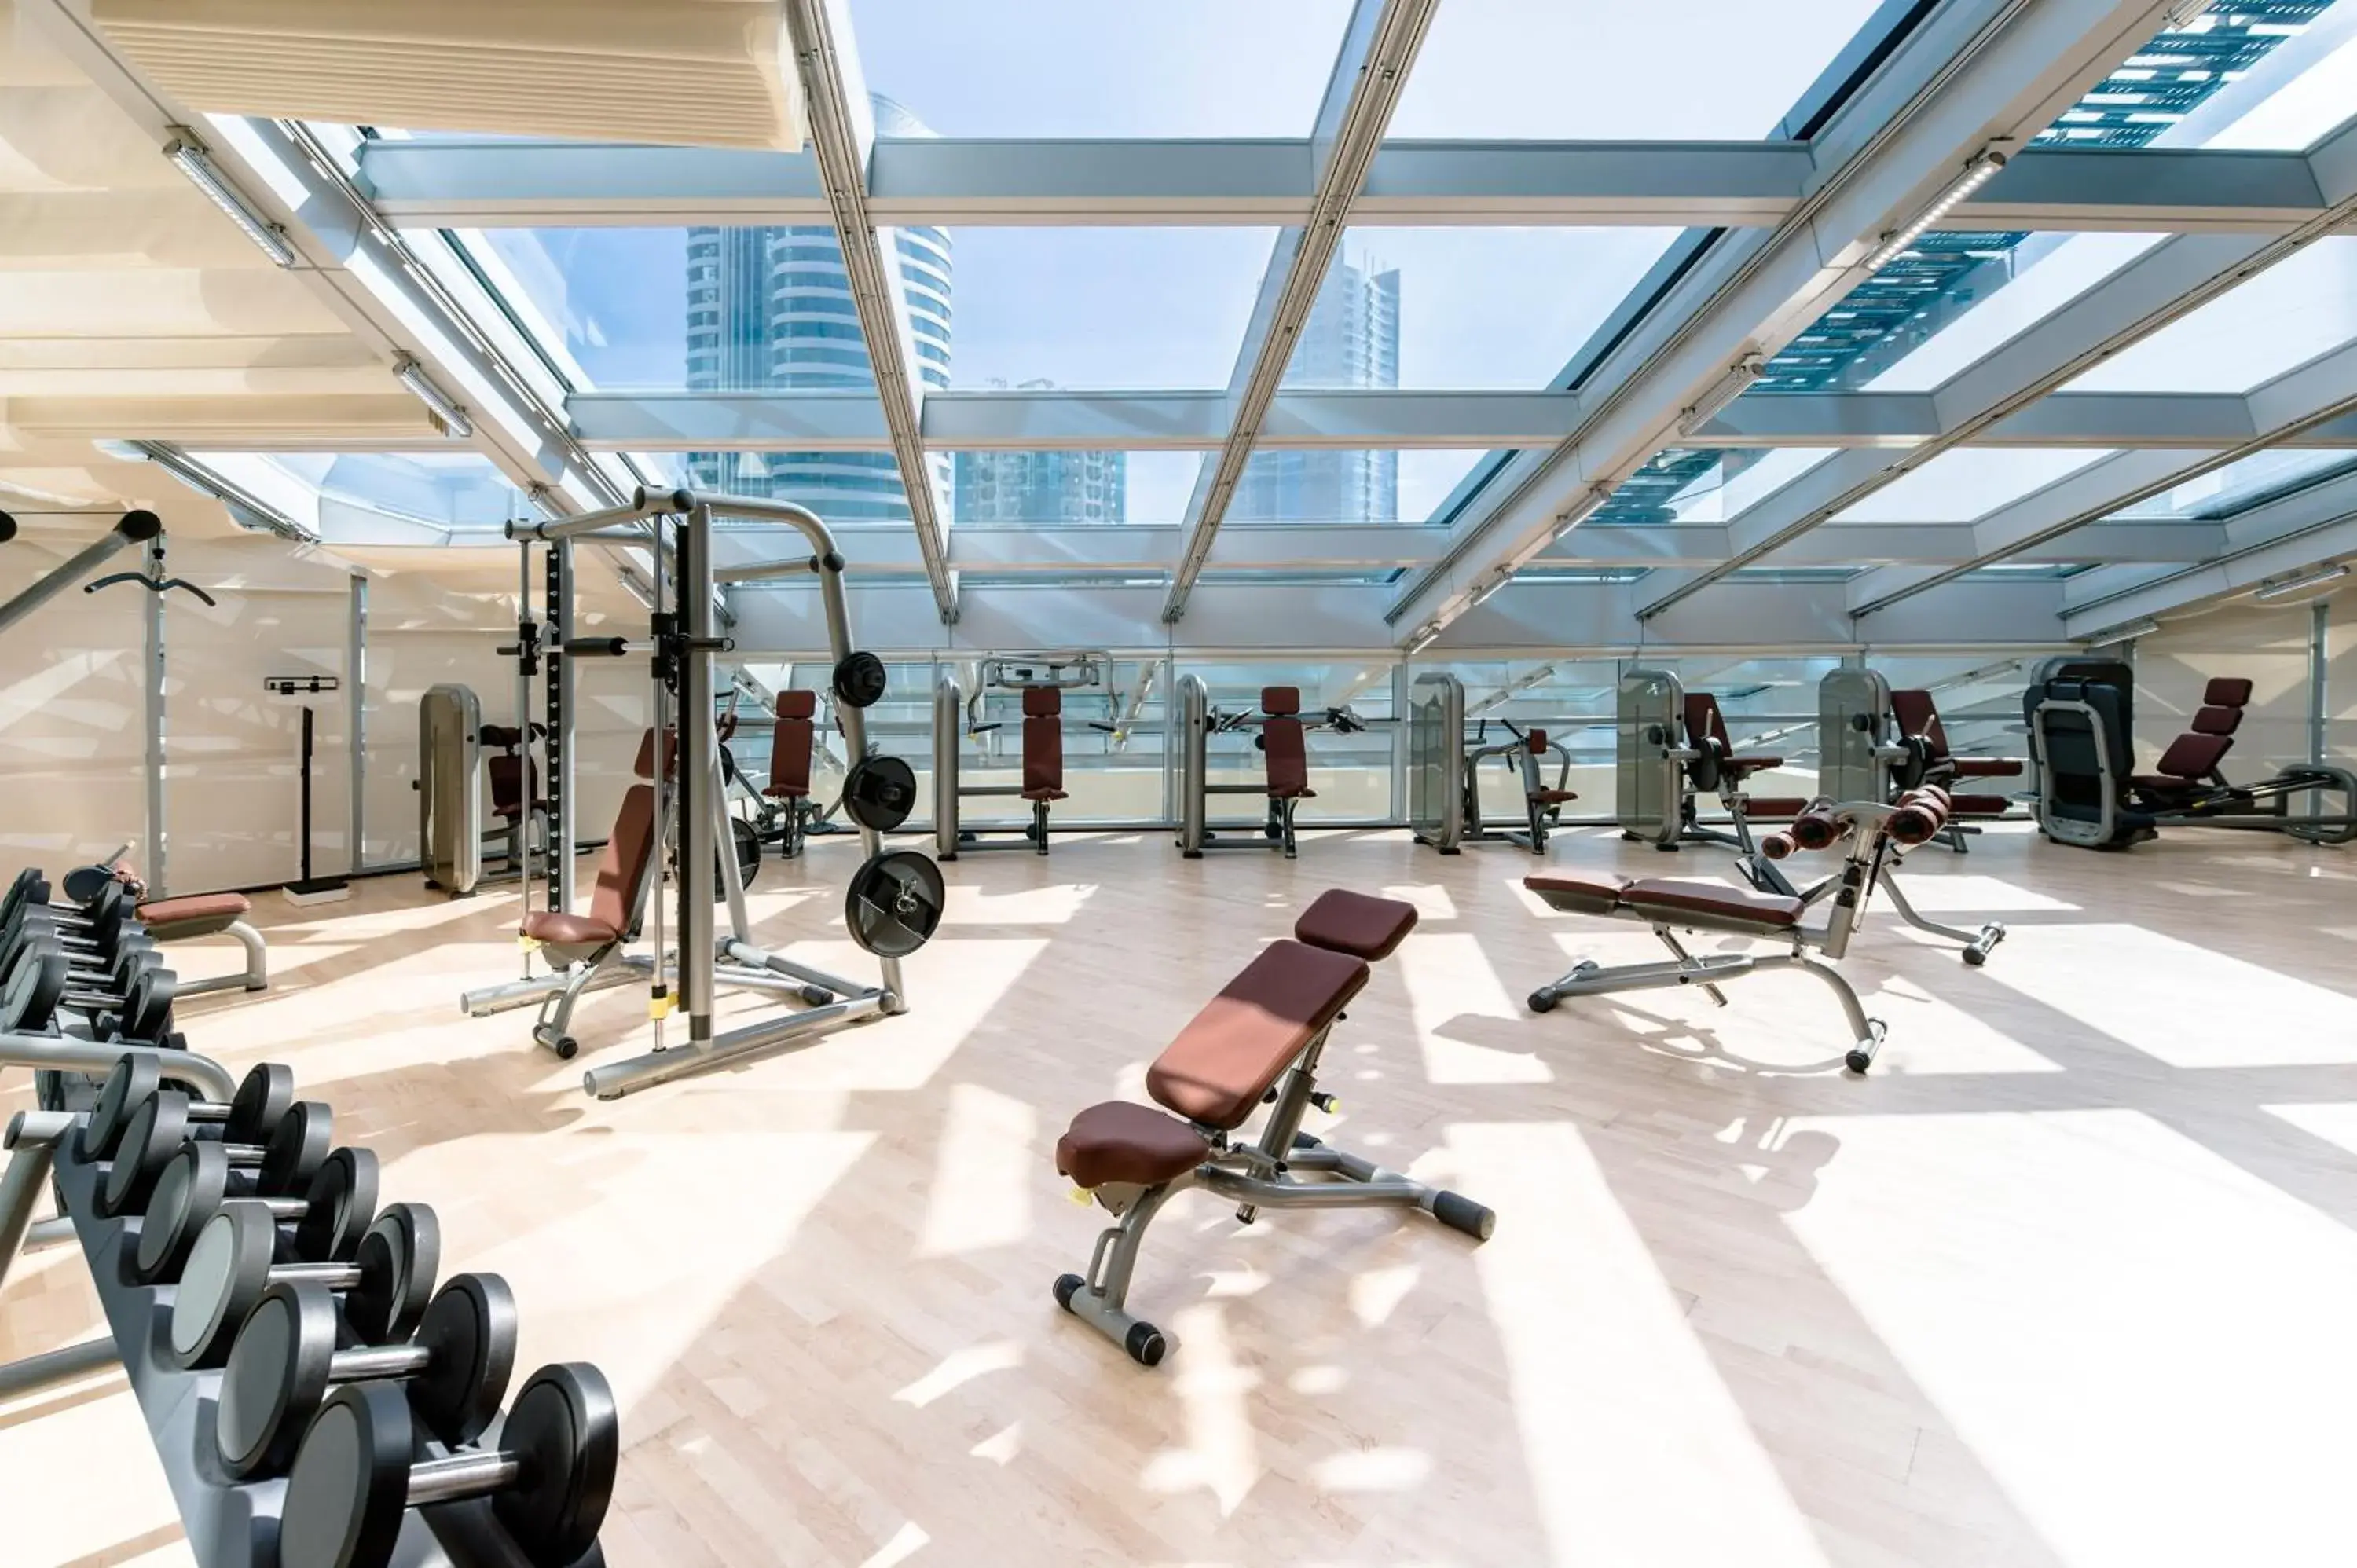 Fitness centre/facilities, Fitness Center/Facilities in Aparthotel Adagio Fujairah